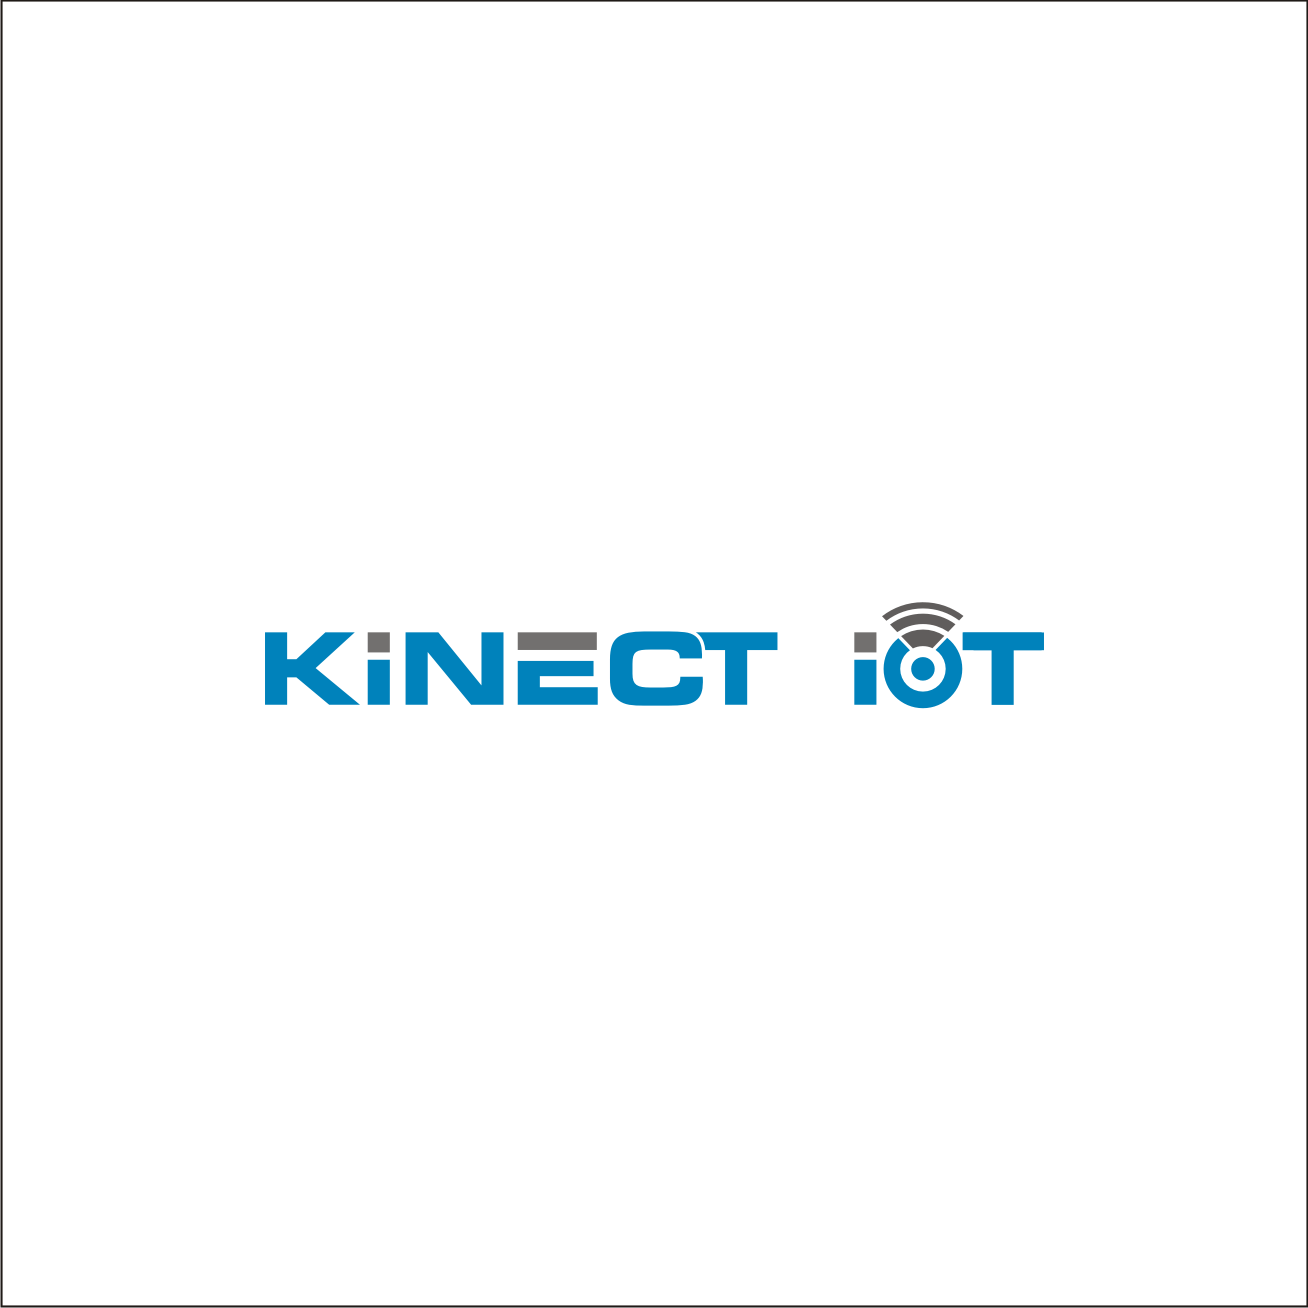 Kinect Logo - Elegant, Playful Logo Design for kinect IOT or kinect internet of ...